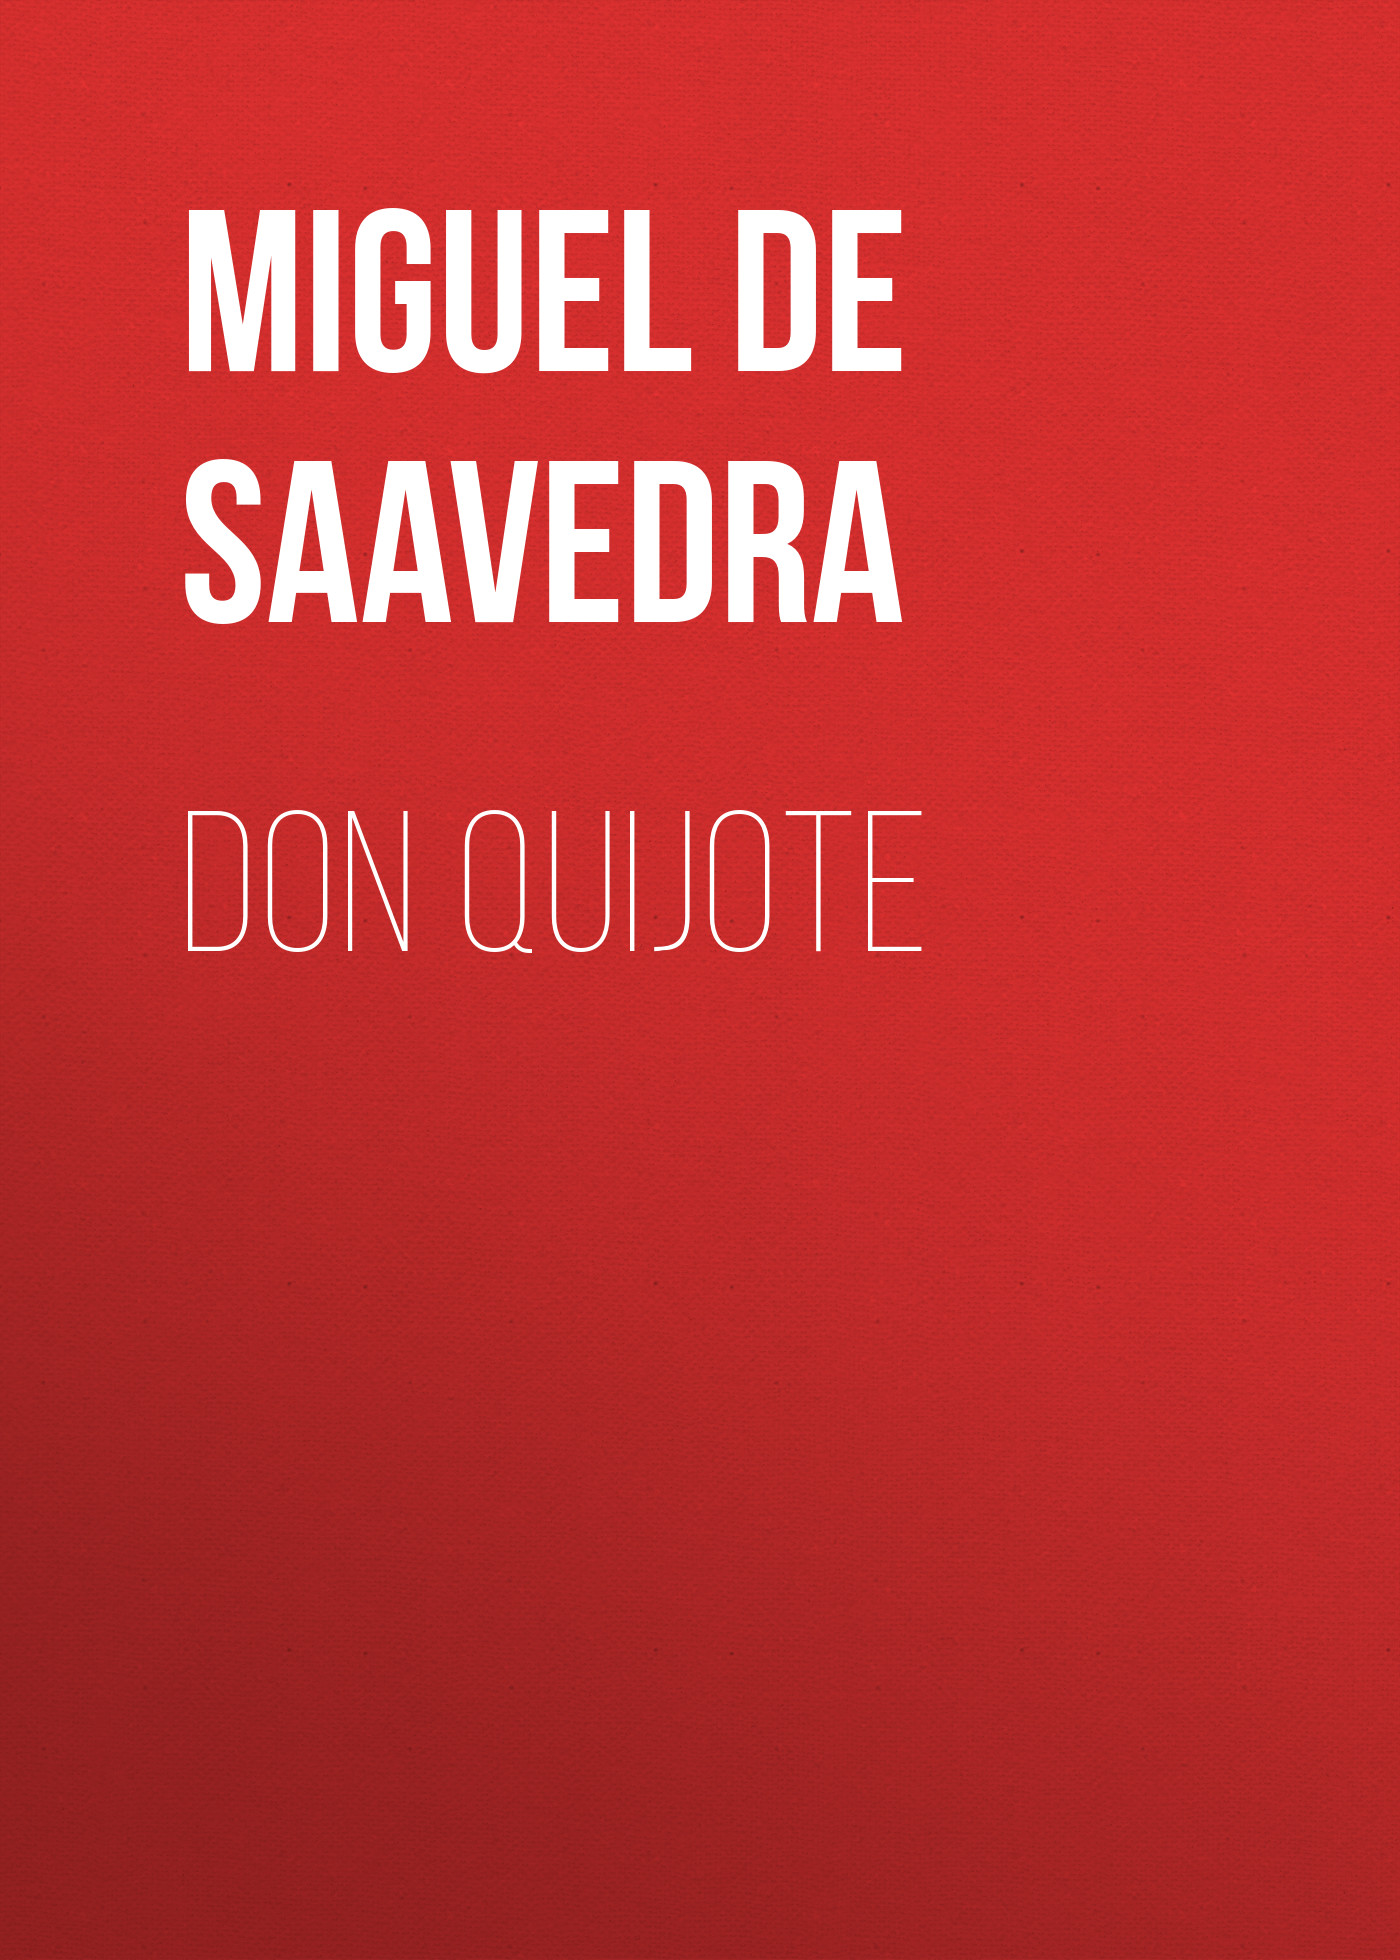 Книга Don Quijote из серии , созданная Miguel Cervantes, может относится к жанру Зарубежная старинная литература, Зарубежная классика. Стоимость электронной книги Don Quijote с идентификатором 25020875 составляет 0 руб.